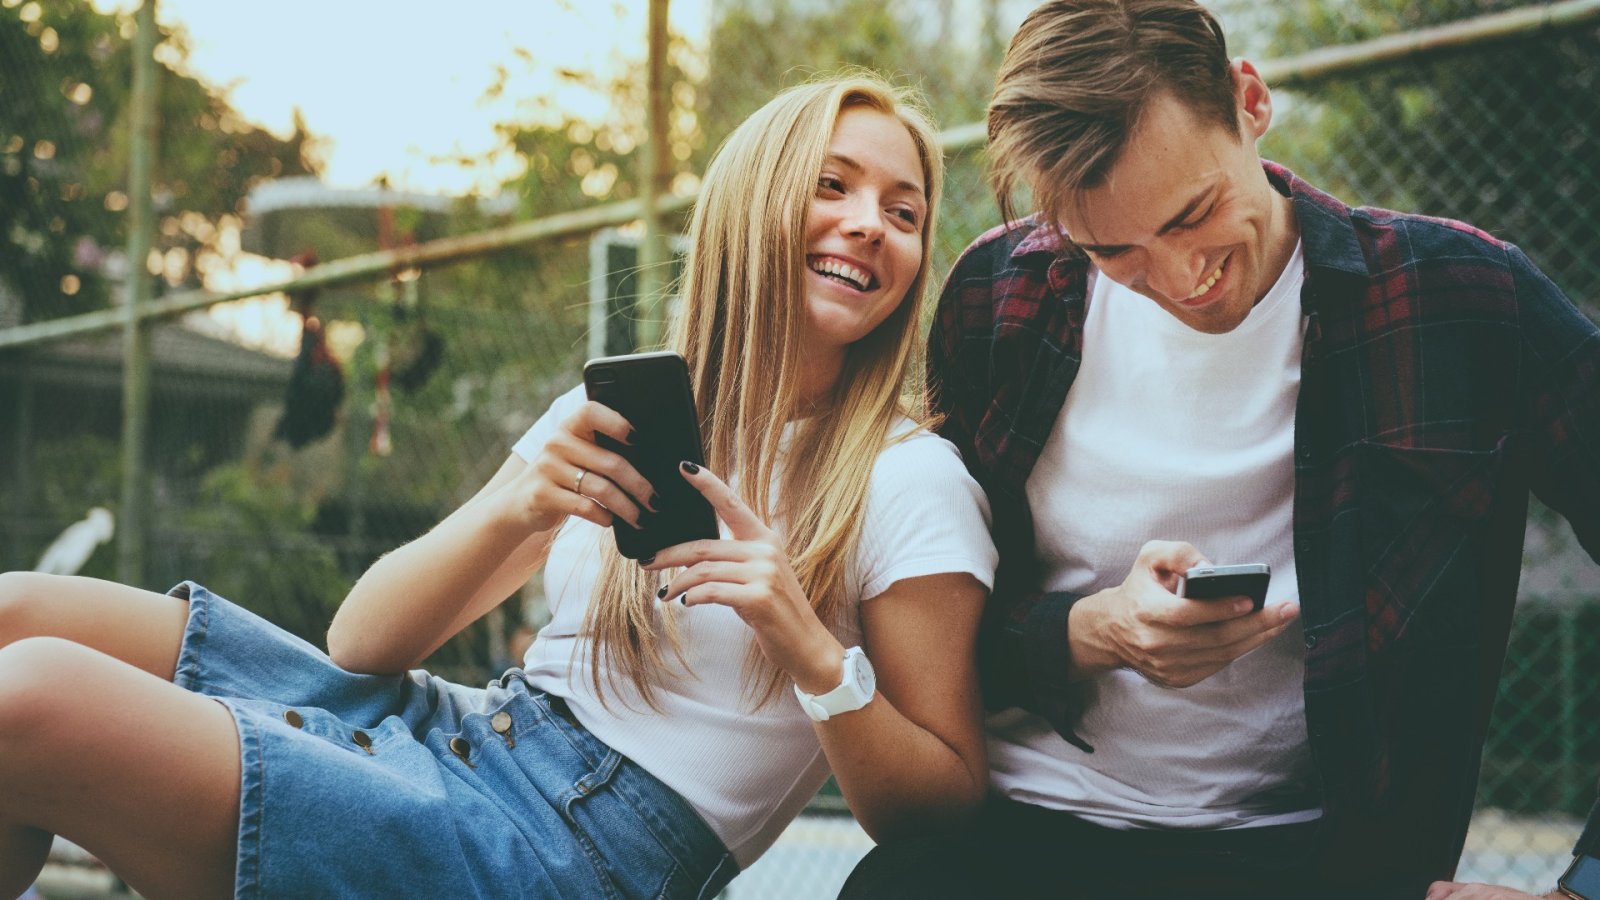 Why Gen Z loves social media for dating